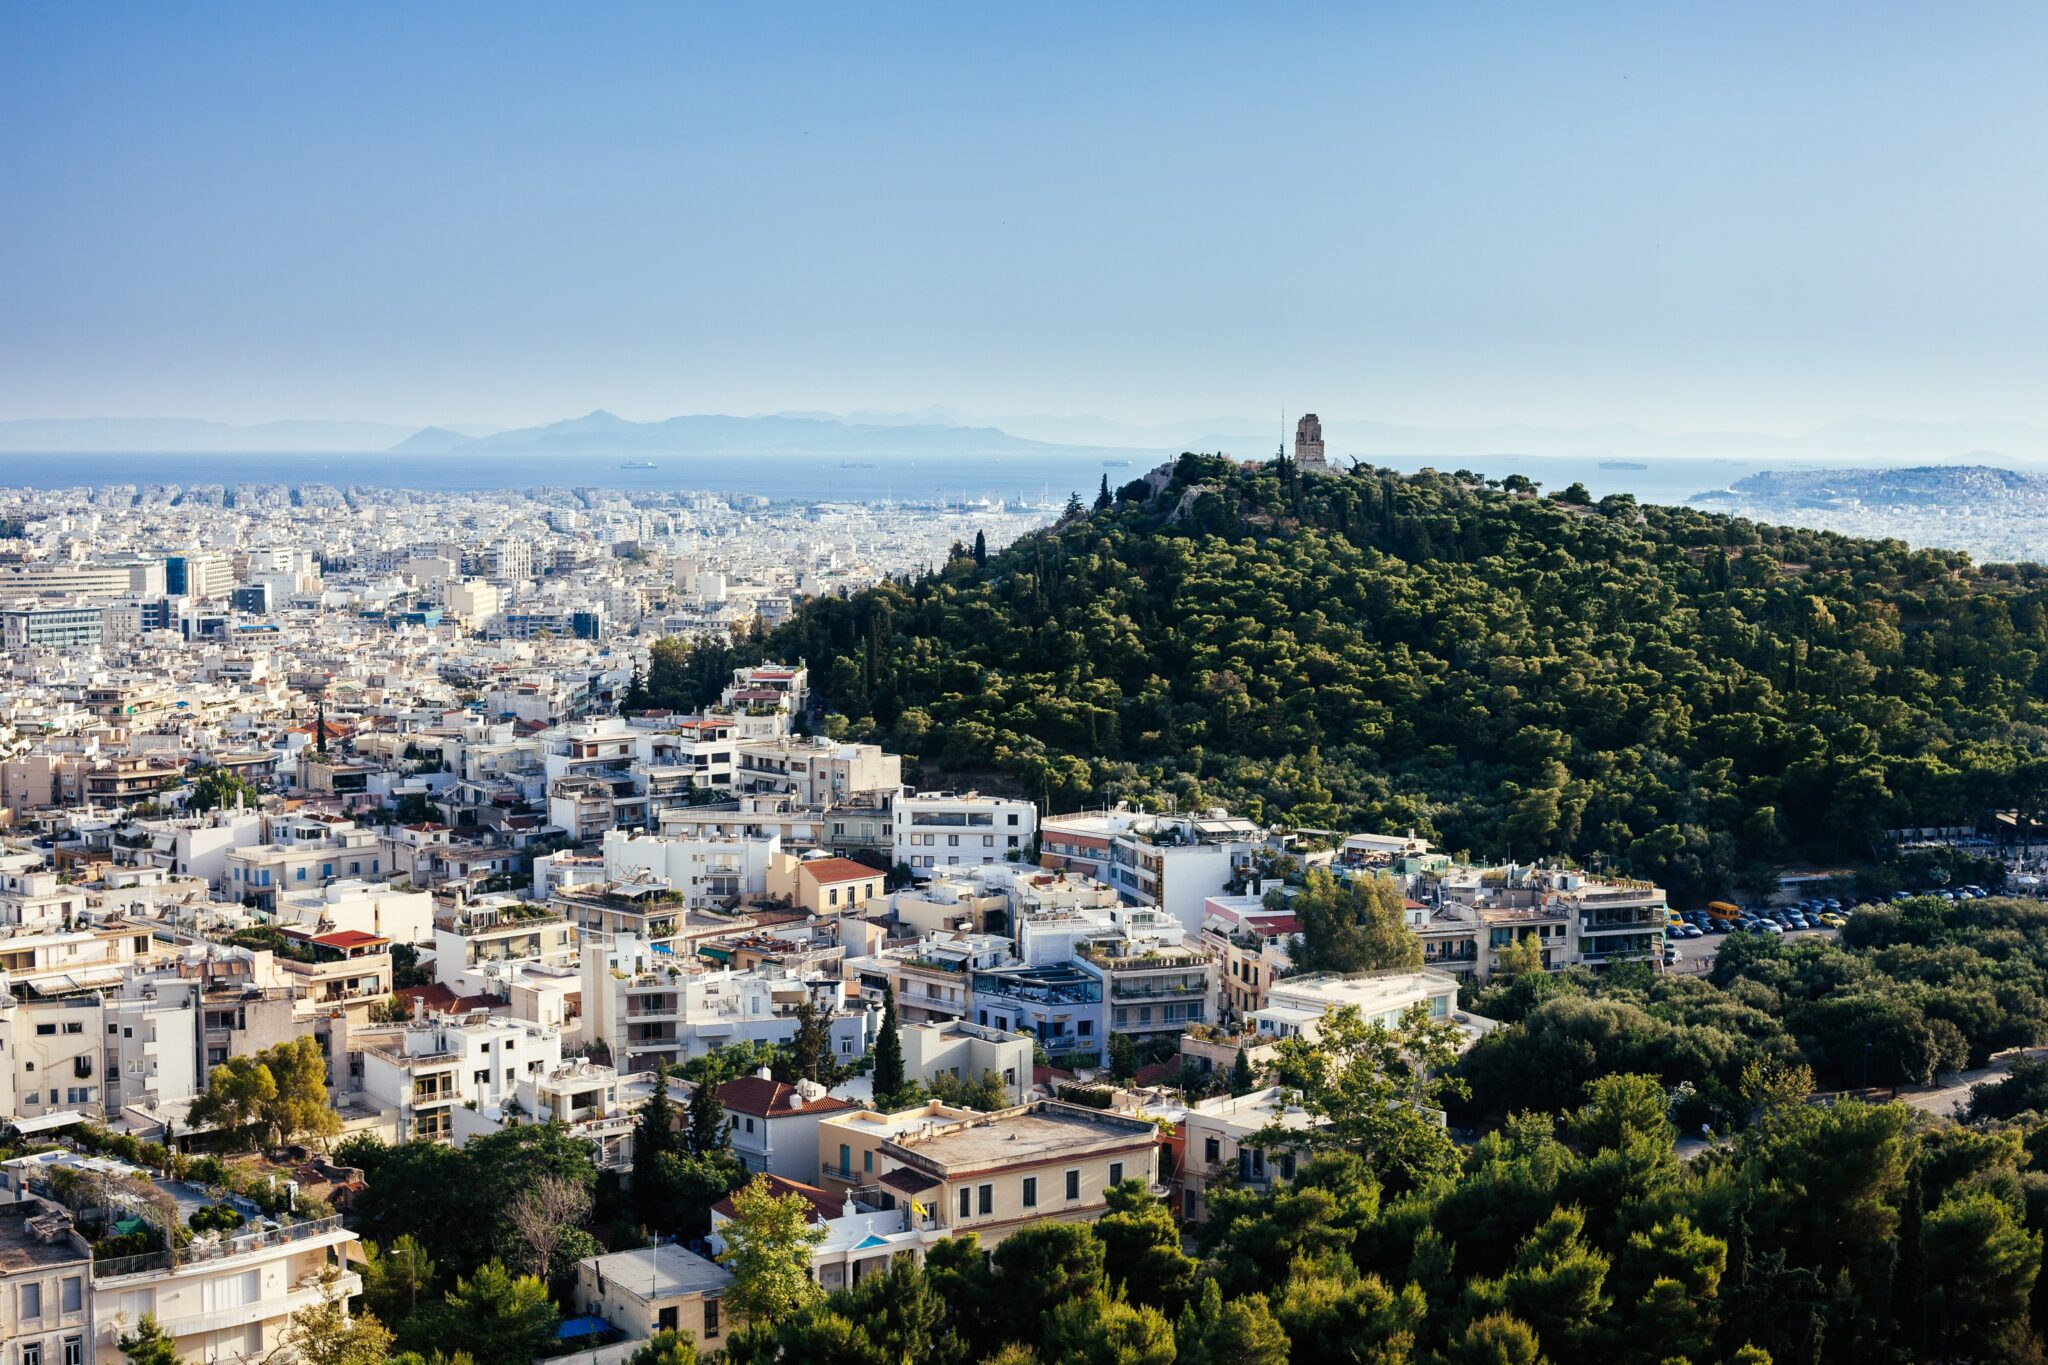 Οι ελληνικοί προορισμοί ανάμεσα στις κορυφαίες διεθνείς ταξιδιωτικές αναζητήσεις για το καλοκαίρι